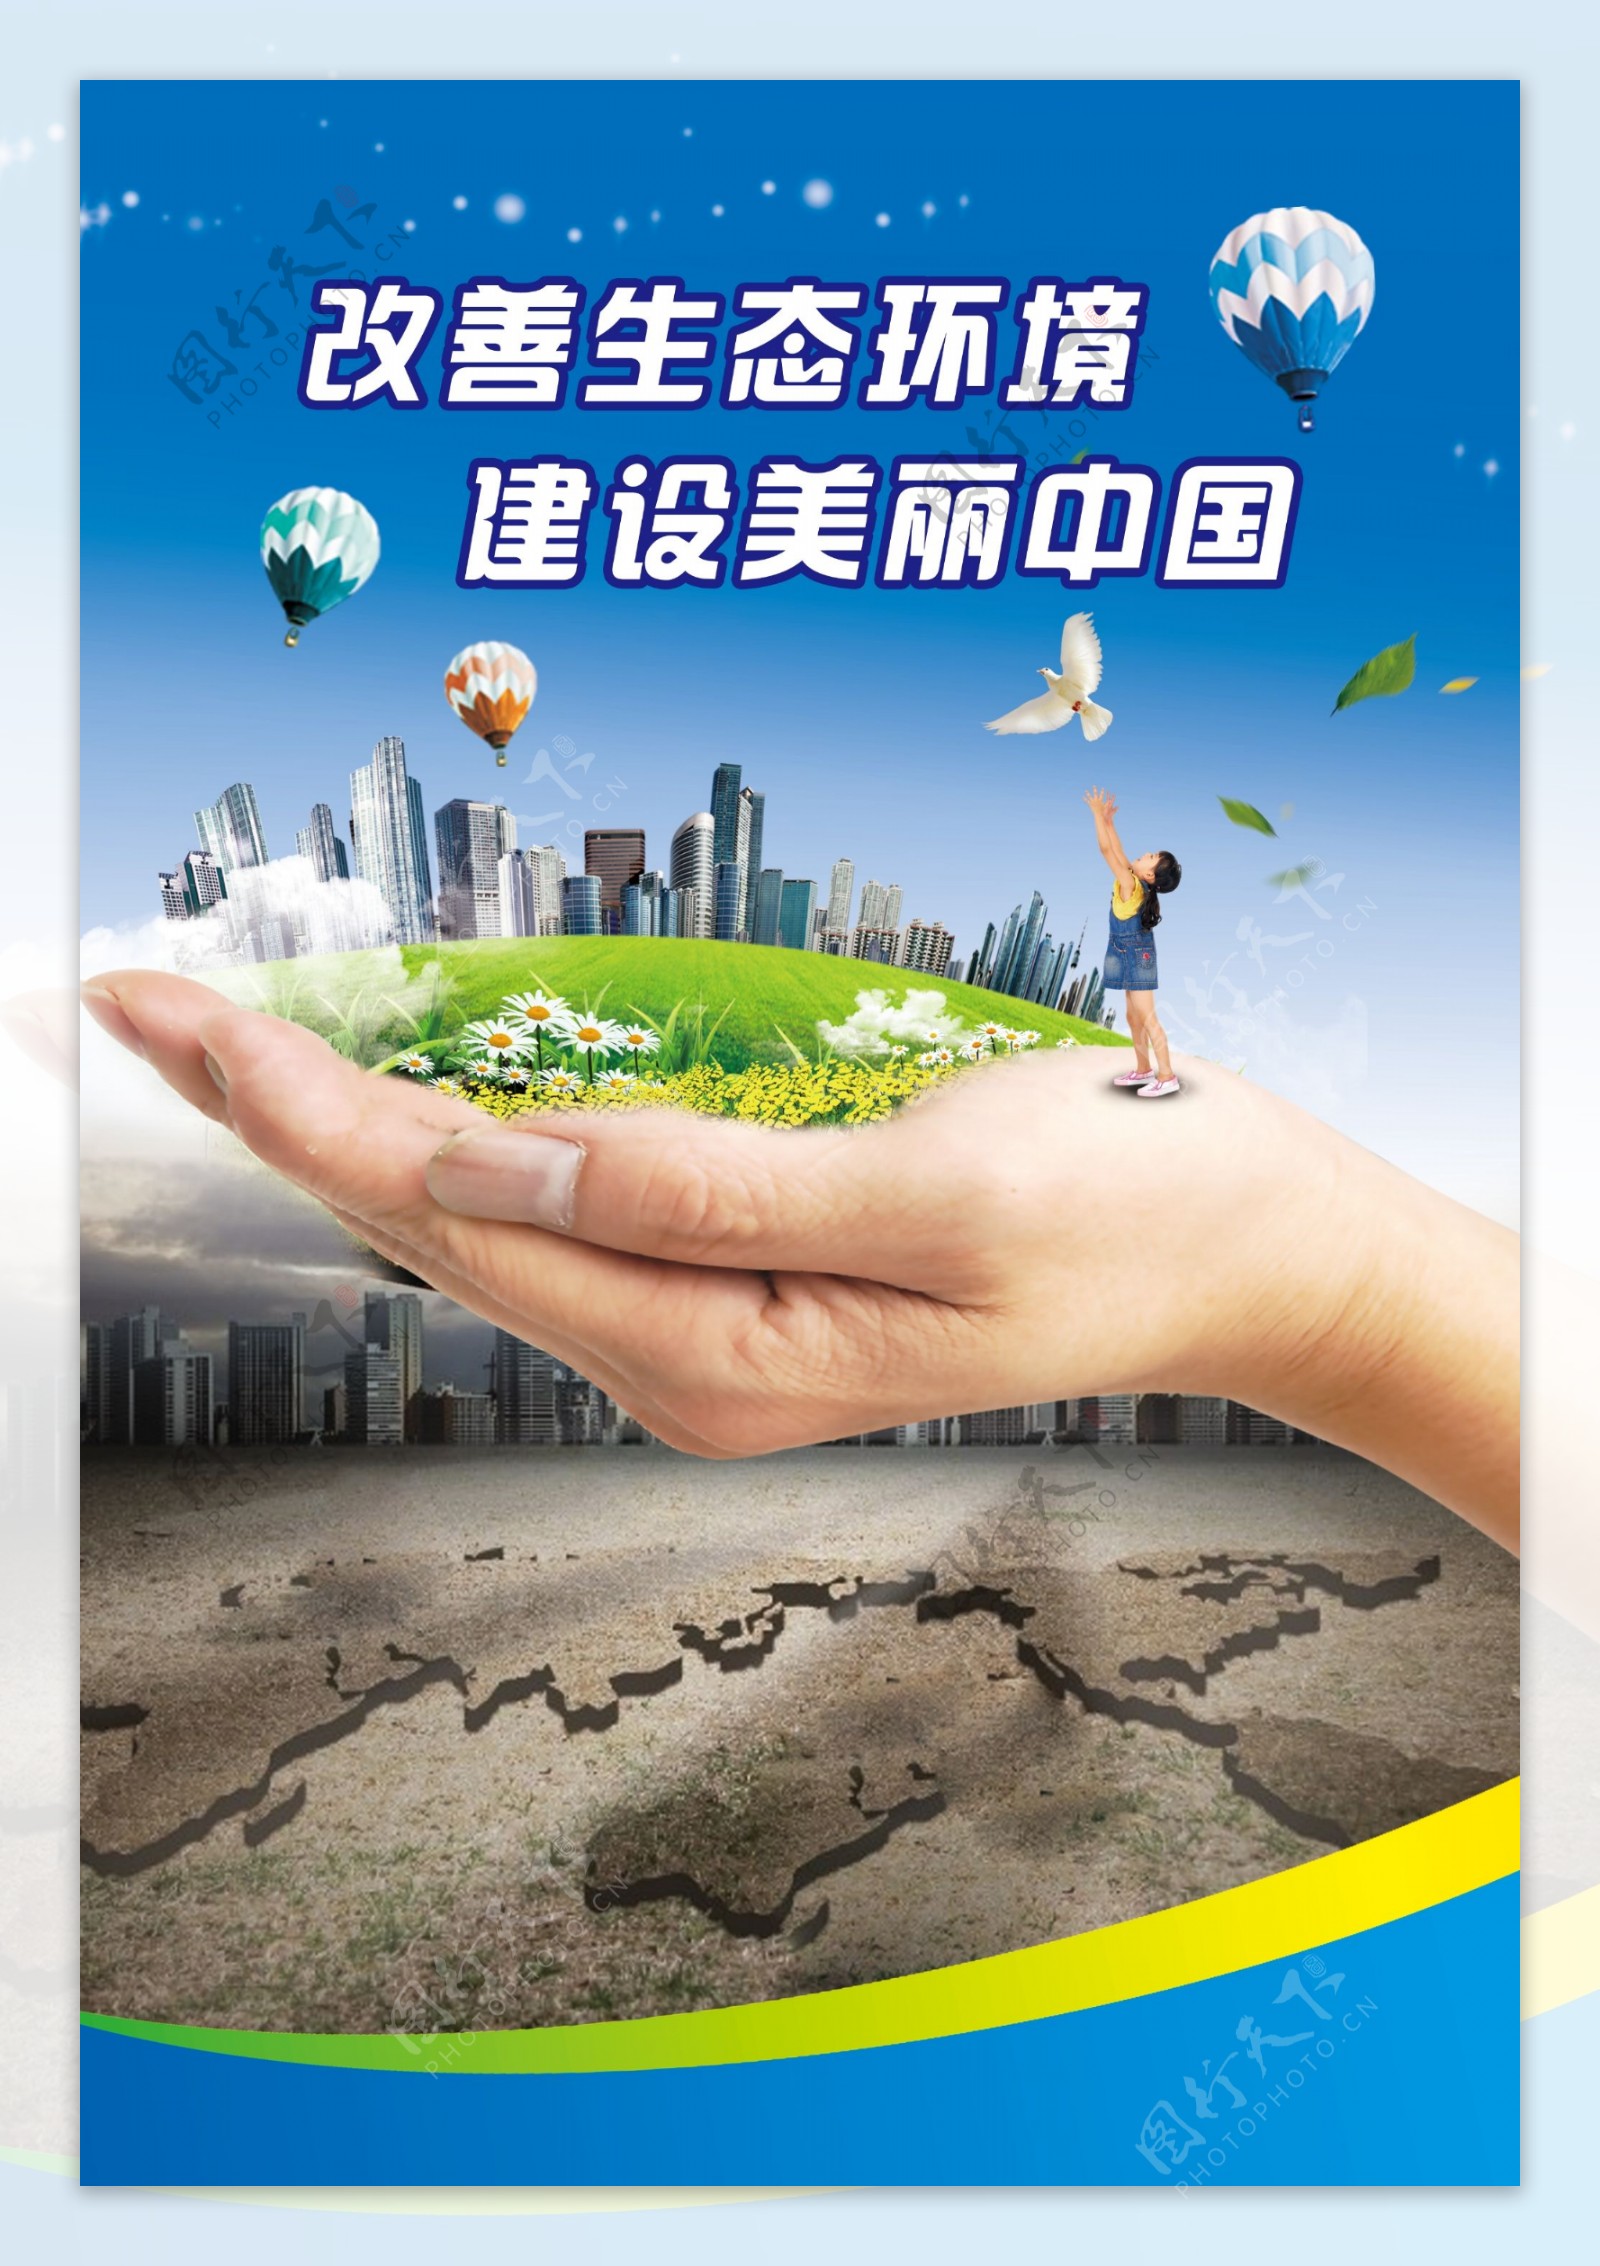 改善生态环境建设美丽中国图片